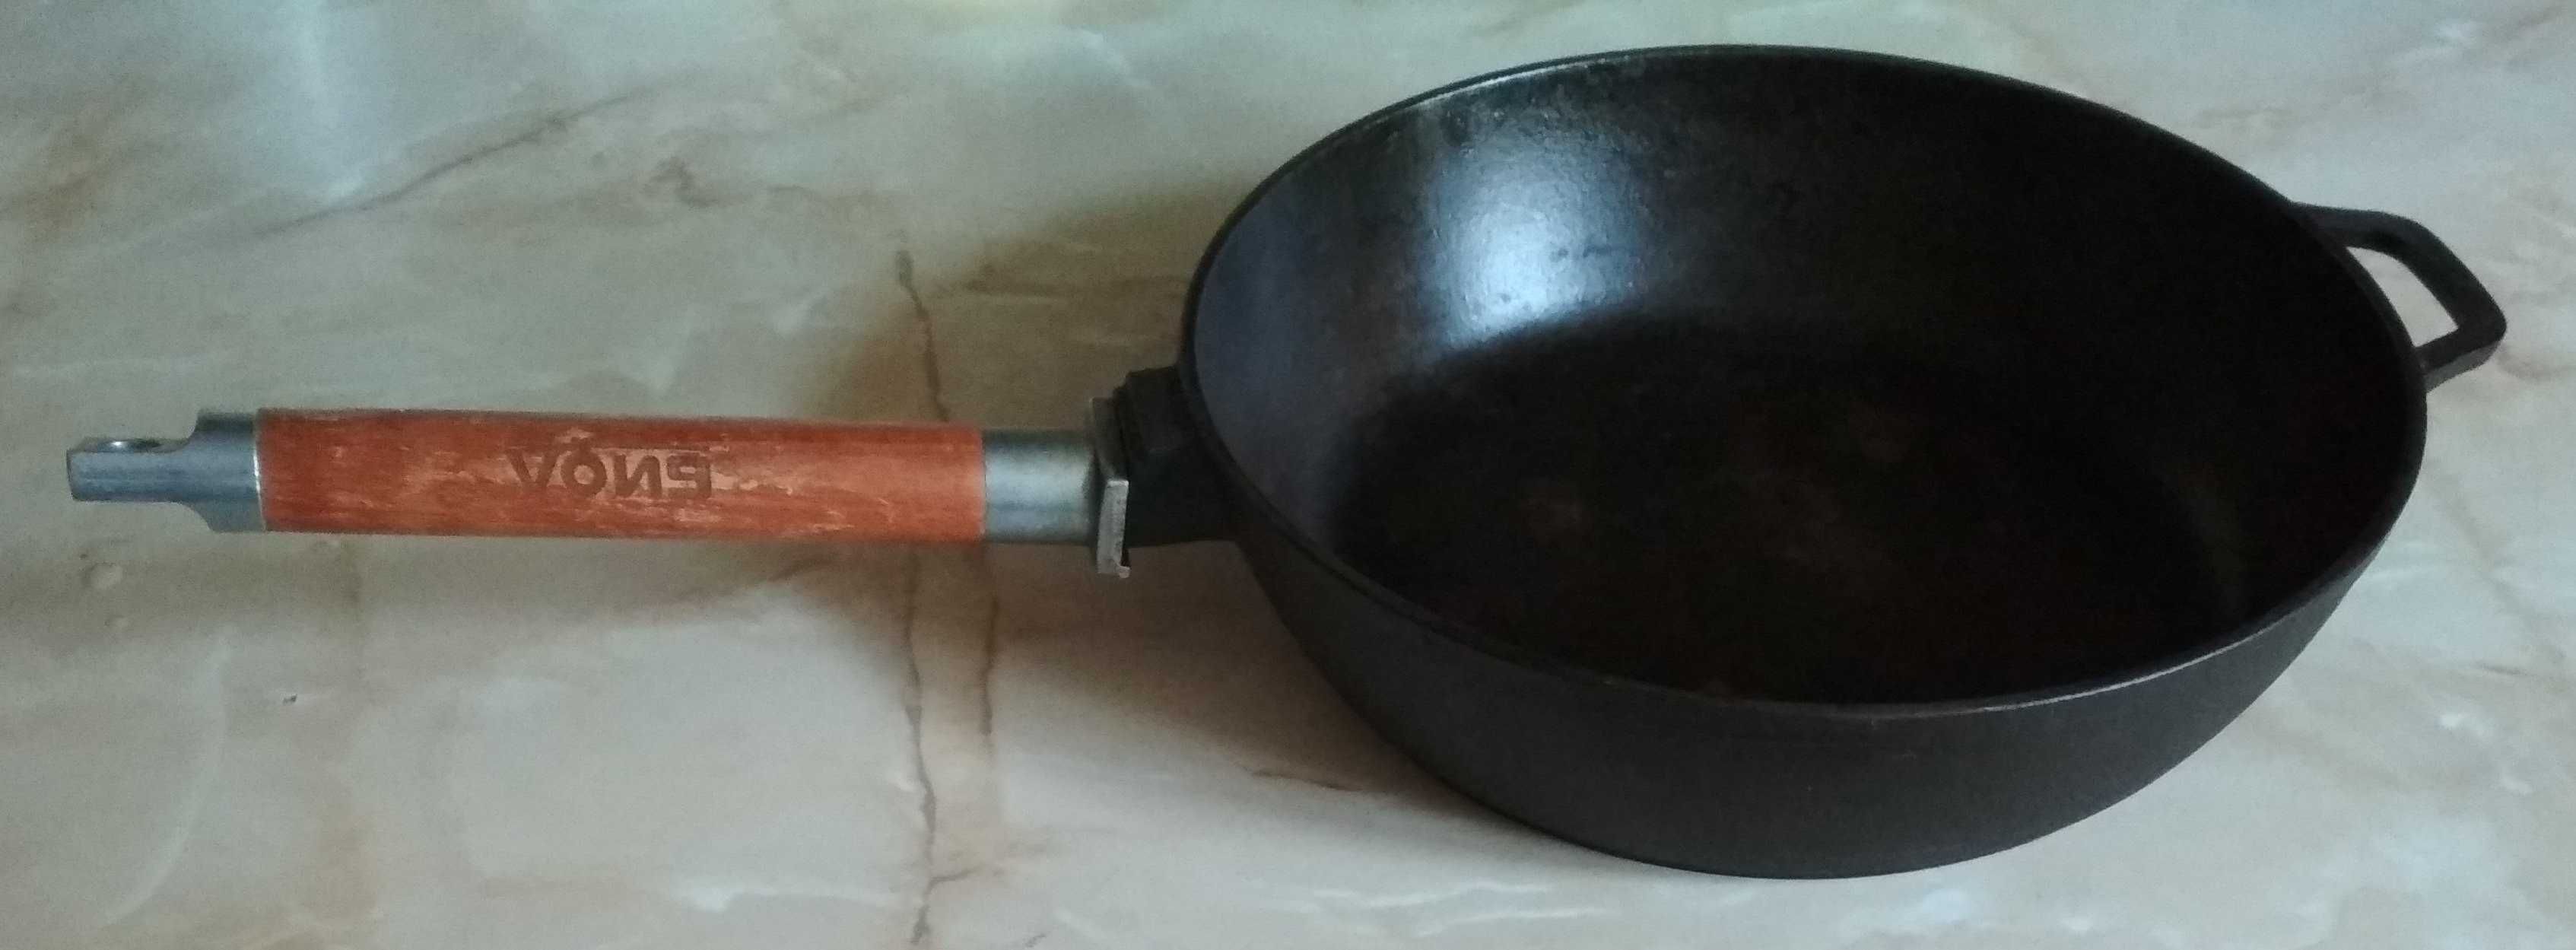 Сковорода чугунная BIOL со съёмной ручкой